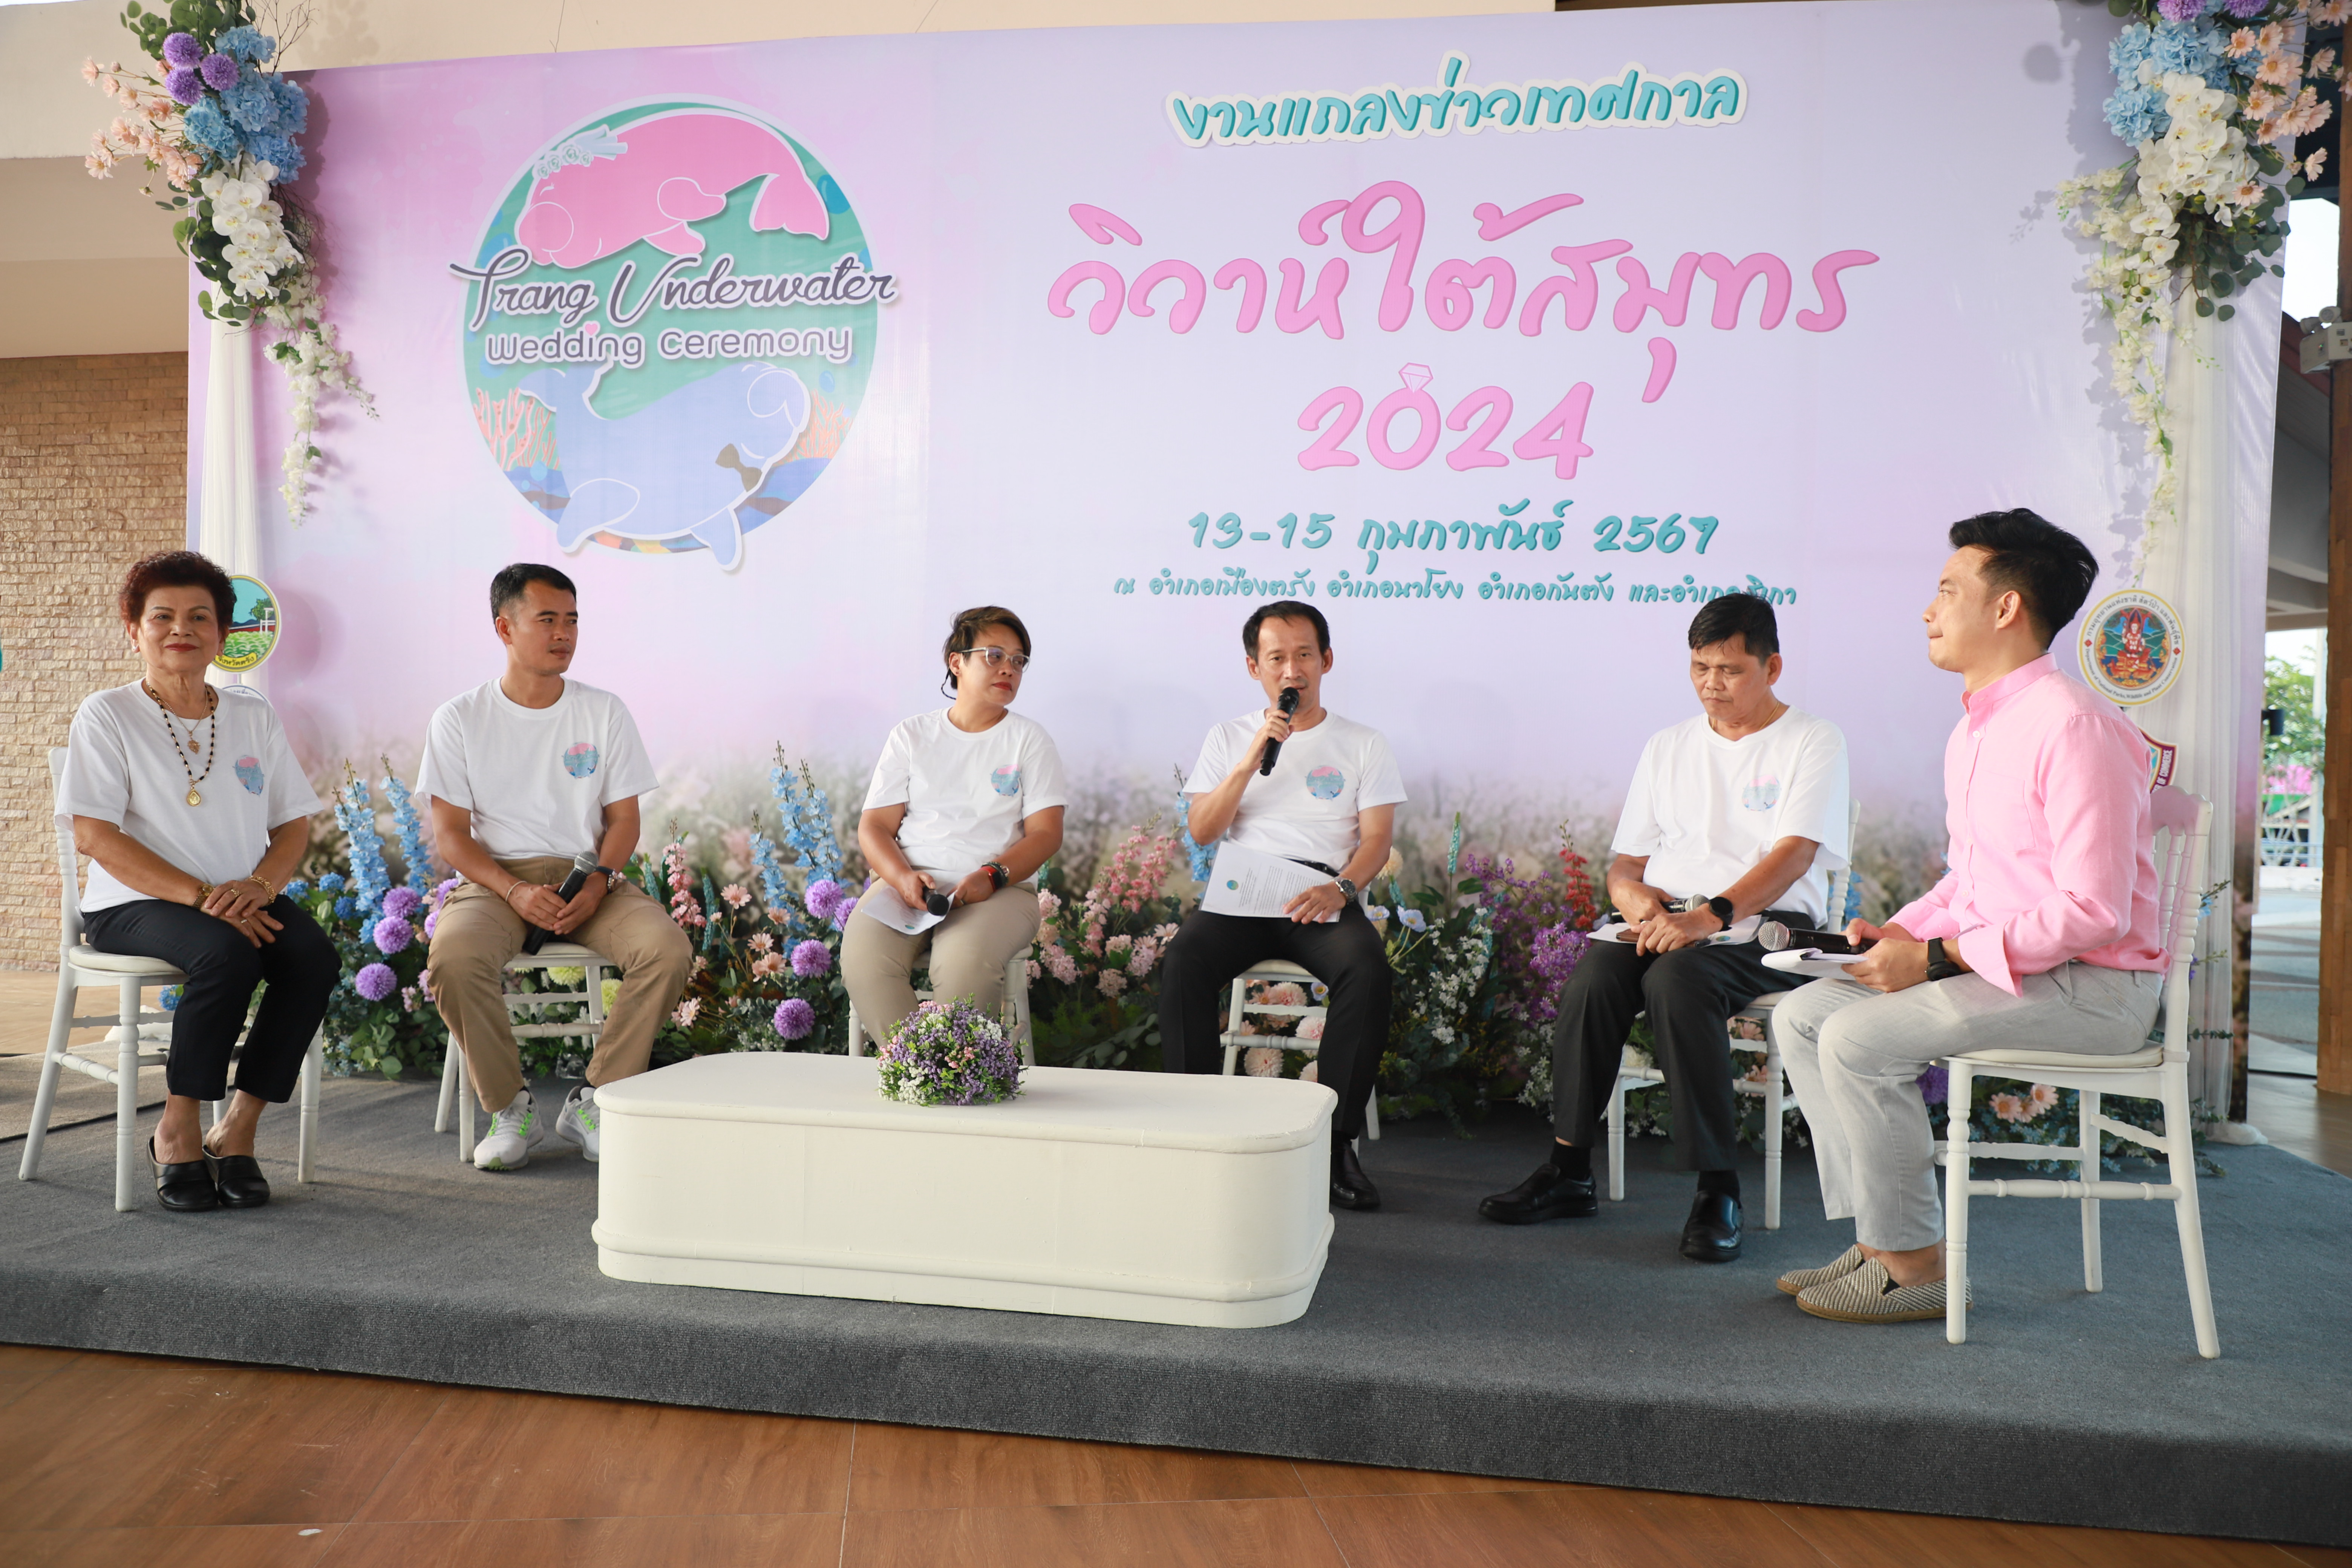 รายงานพิเศษ พิธีวิวาห์ใต้สมุทร 2024 หนึ่งในอัตลักษณ์ของจังหวัดตรังและความภาคภูมิใจของการท่องเที่ยวไทย